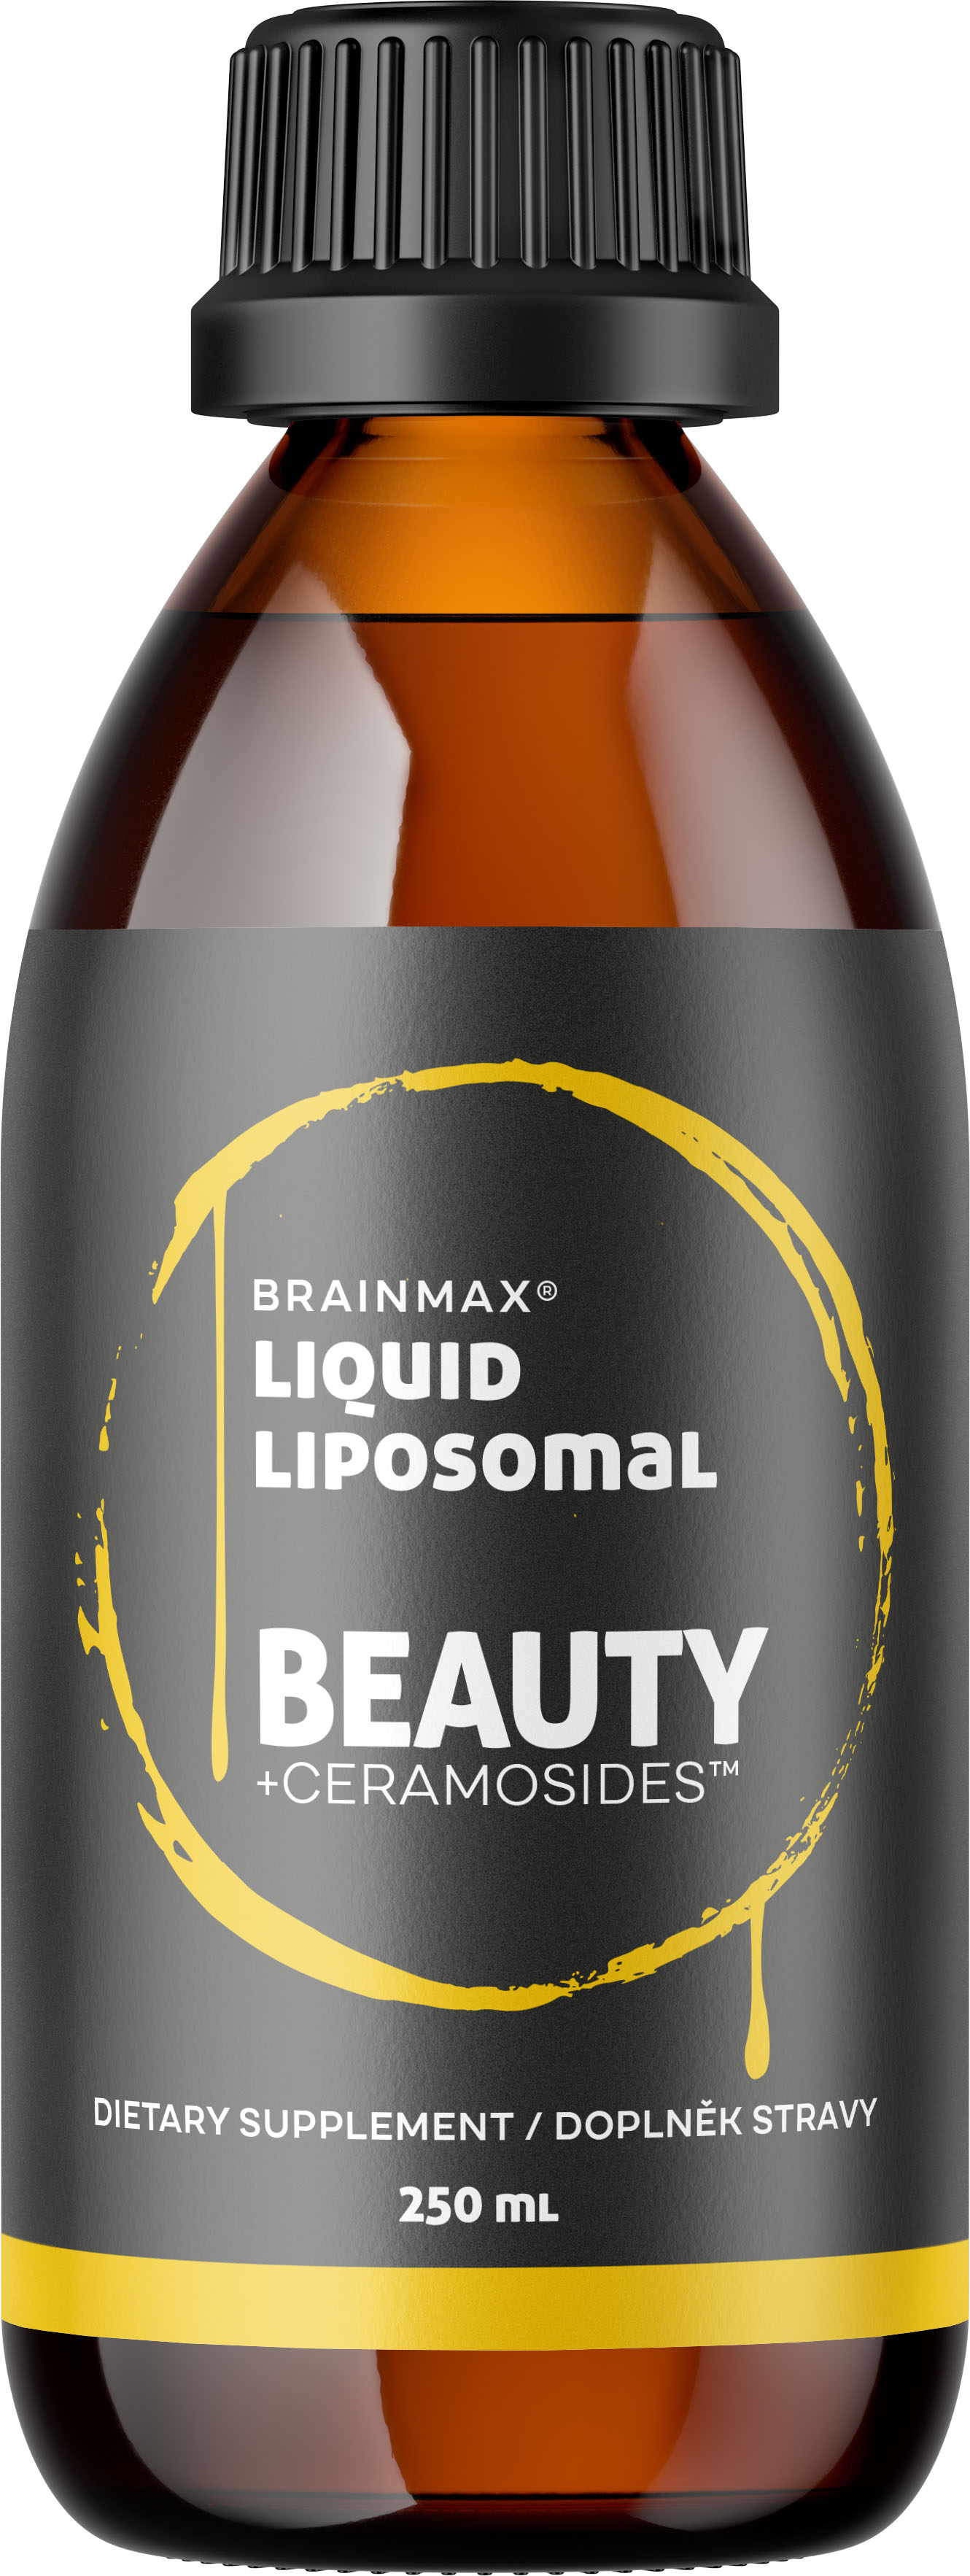 BrainMax Lipozomální komplex pro krásnou pleť, CERAMOSIDES™, 250 ml BrainMax Liposomal Beauty - Patentovaný komplex ceramidů pro pevnější pokožku a pleť, 25 dávek, doplněk stravy